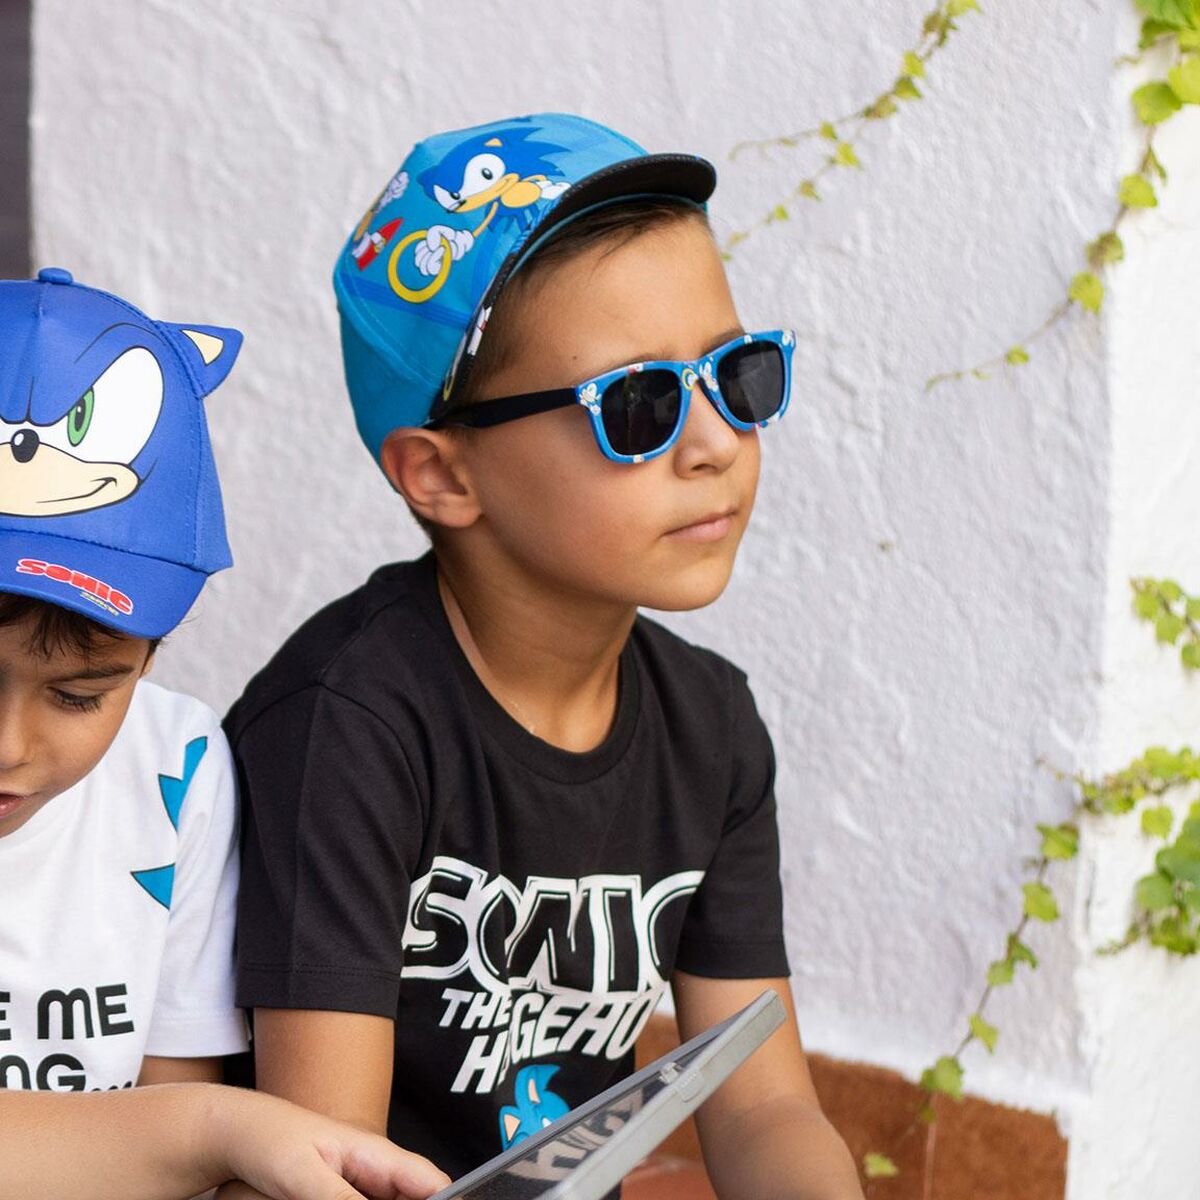 Cappellino per Bambini Sonic Azzurro (53 cm)